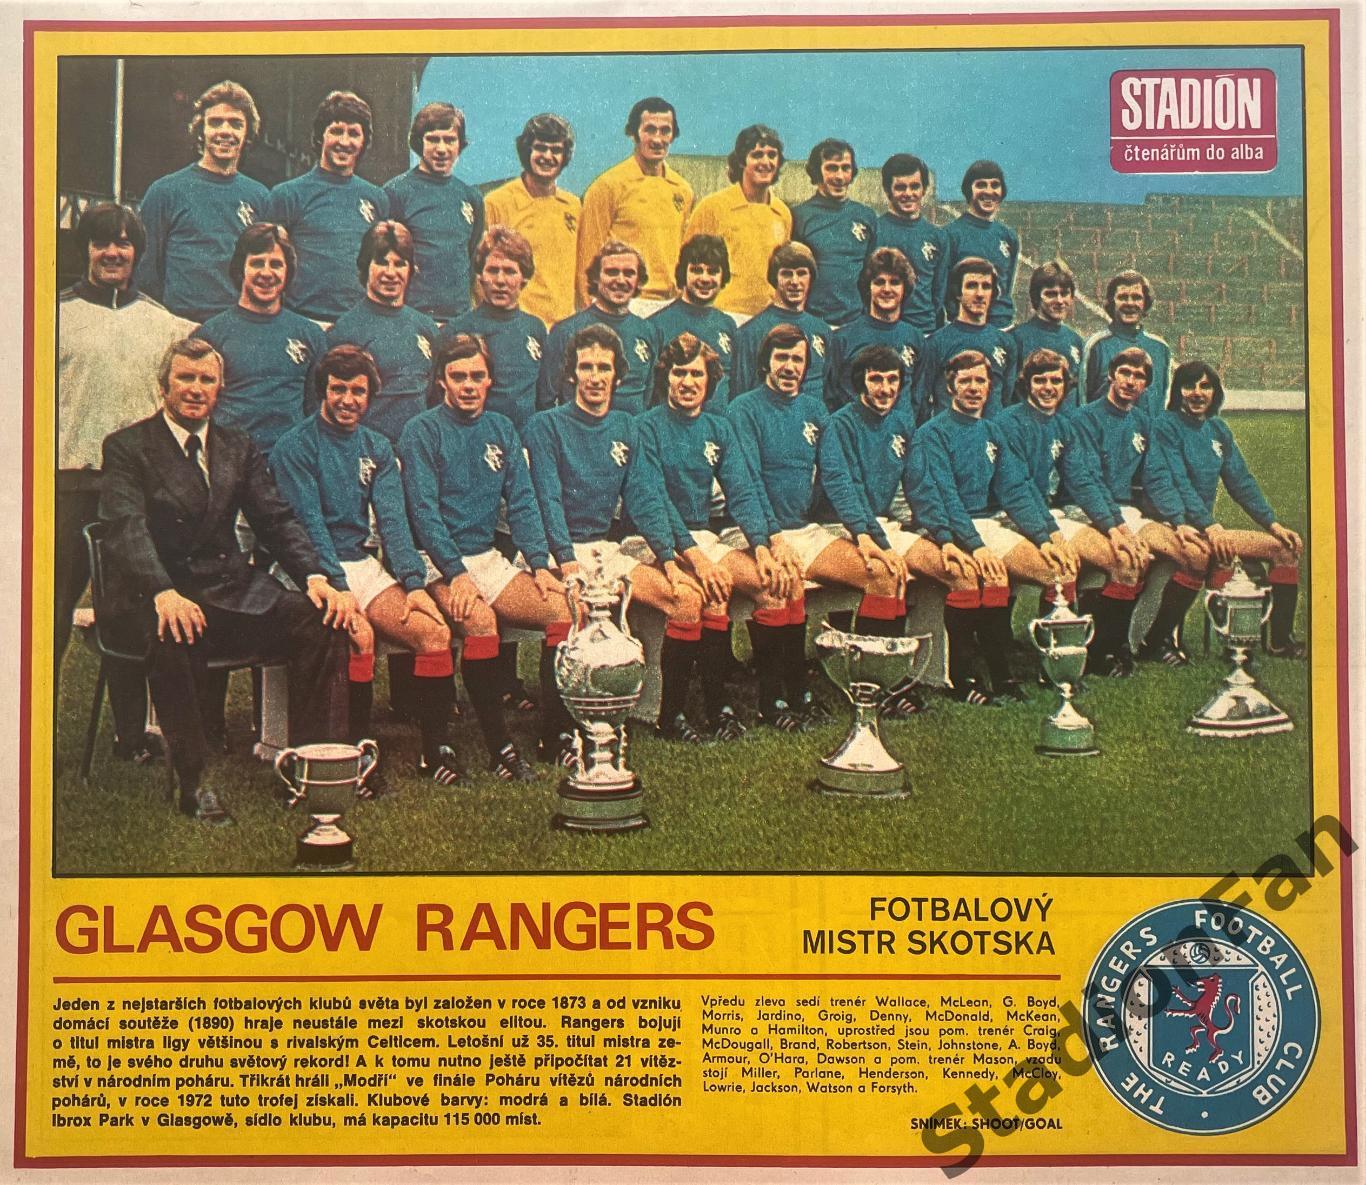 Постер из журнала Stadion - Glasgow Rangers, 1978.